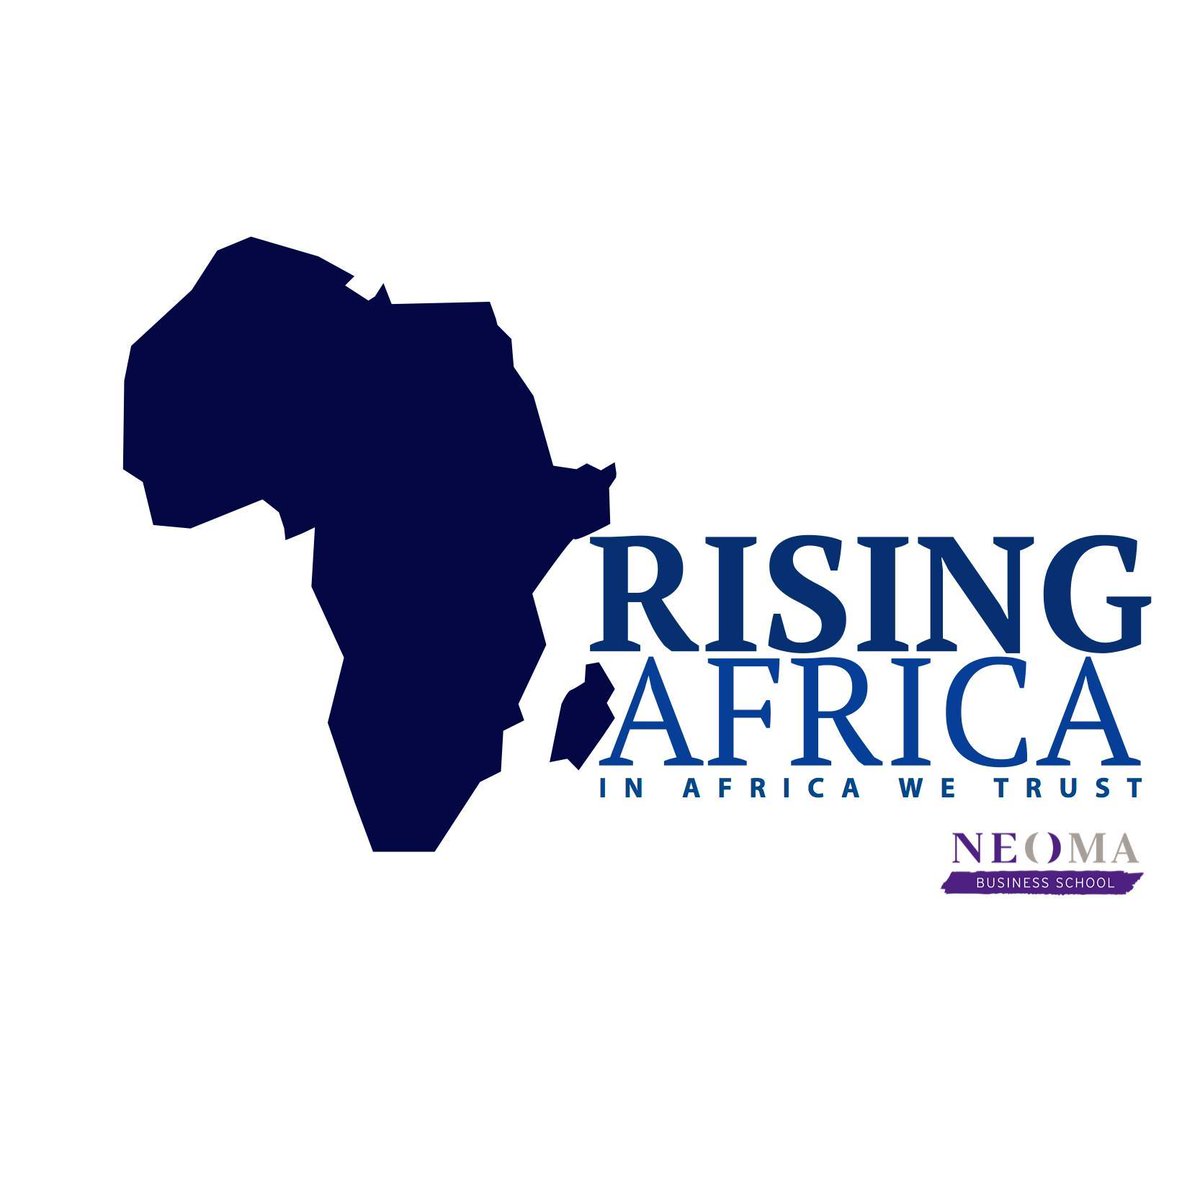 Rising Africa, c'est :
- des conférences autour de sujets économiques et business liés à l'Afrique, sa complexité et son potentiel ;
- des évènements qui unissent, réunissent et font découvrir l'Afrique, ses cultures, ses enjeux, son histoire et sa Beauté.

Stay tuned ;)